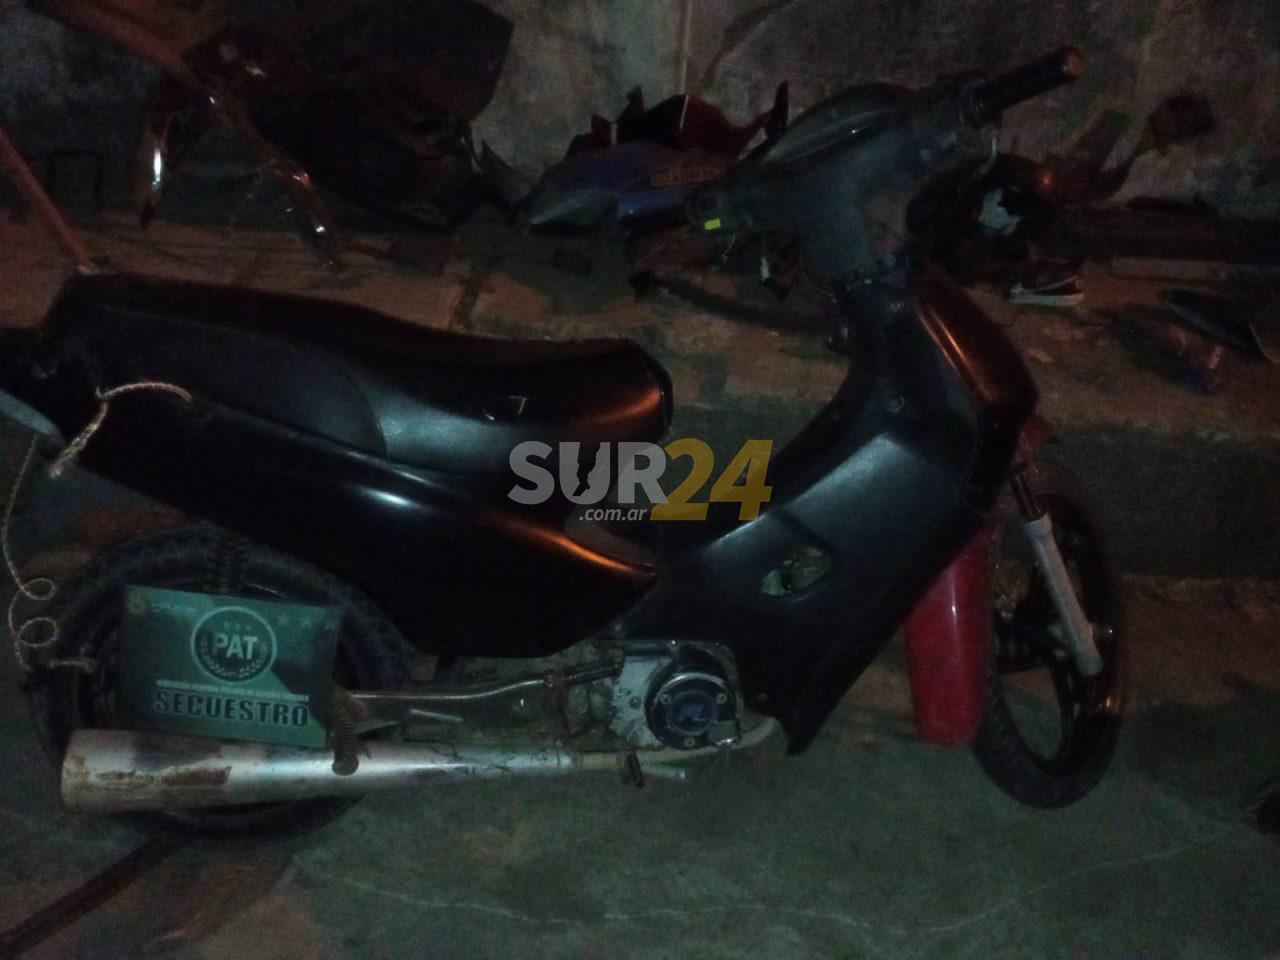 Venado Tuerto: recuperan una moto robada en el año 2011  